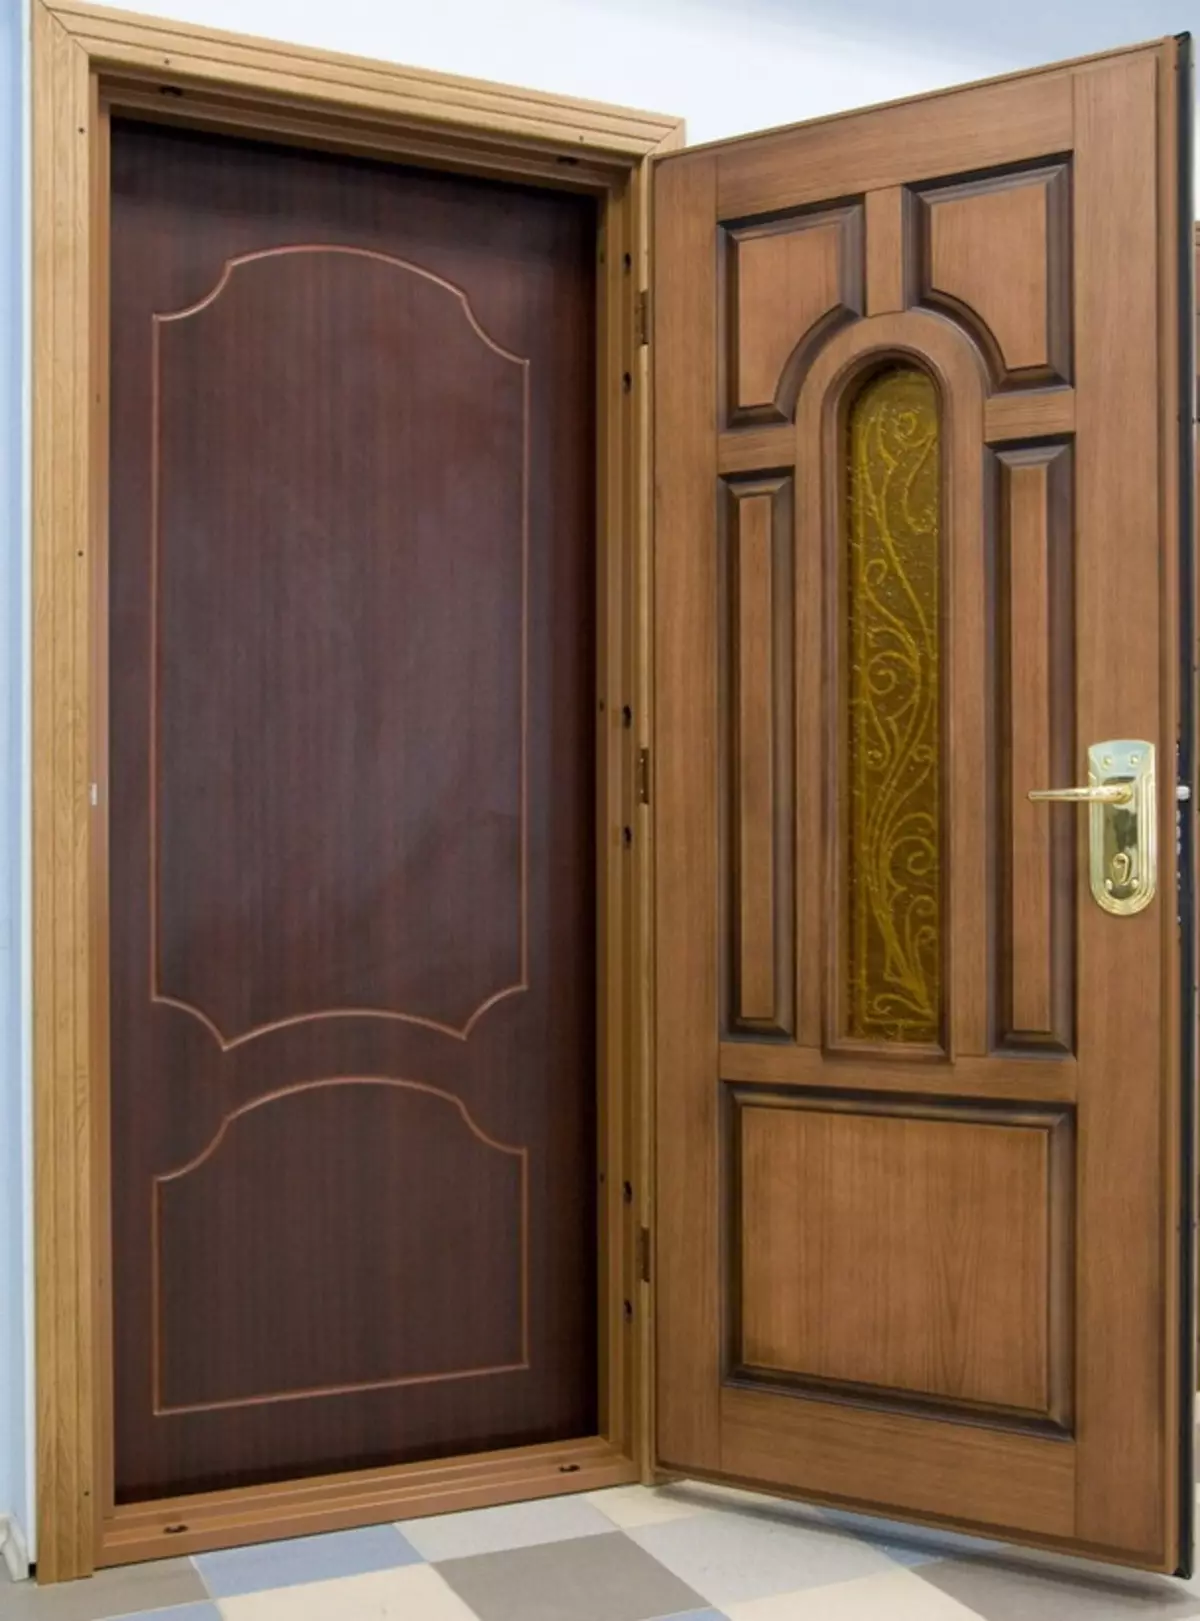 Doors 2 двери. Двойная дверь входная. Дверь входная деревянная. Вторая деревянная входная дверь. Дверь двойная деревянная входная.